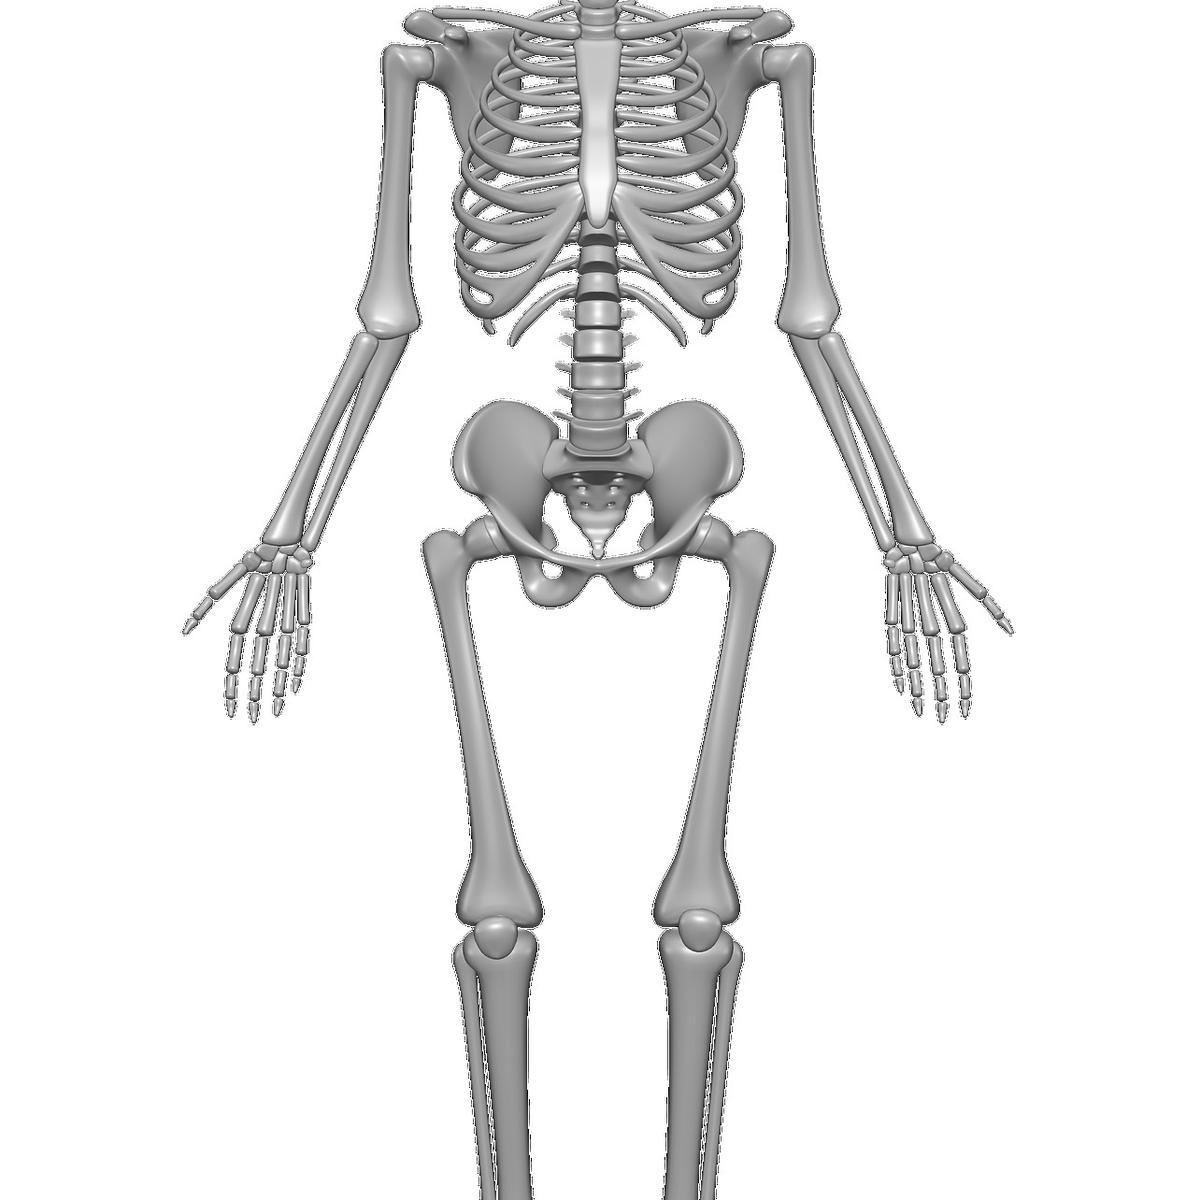 Tulang tengkorak merupakan tulang yang memiliki bentuk ....